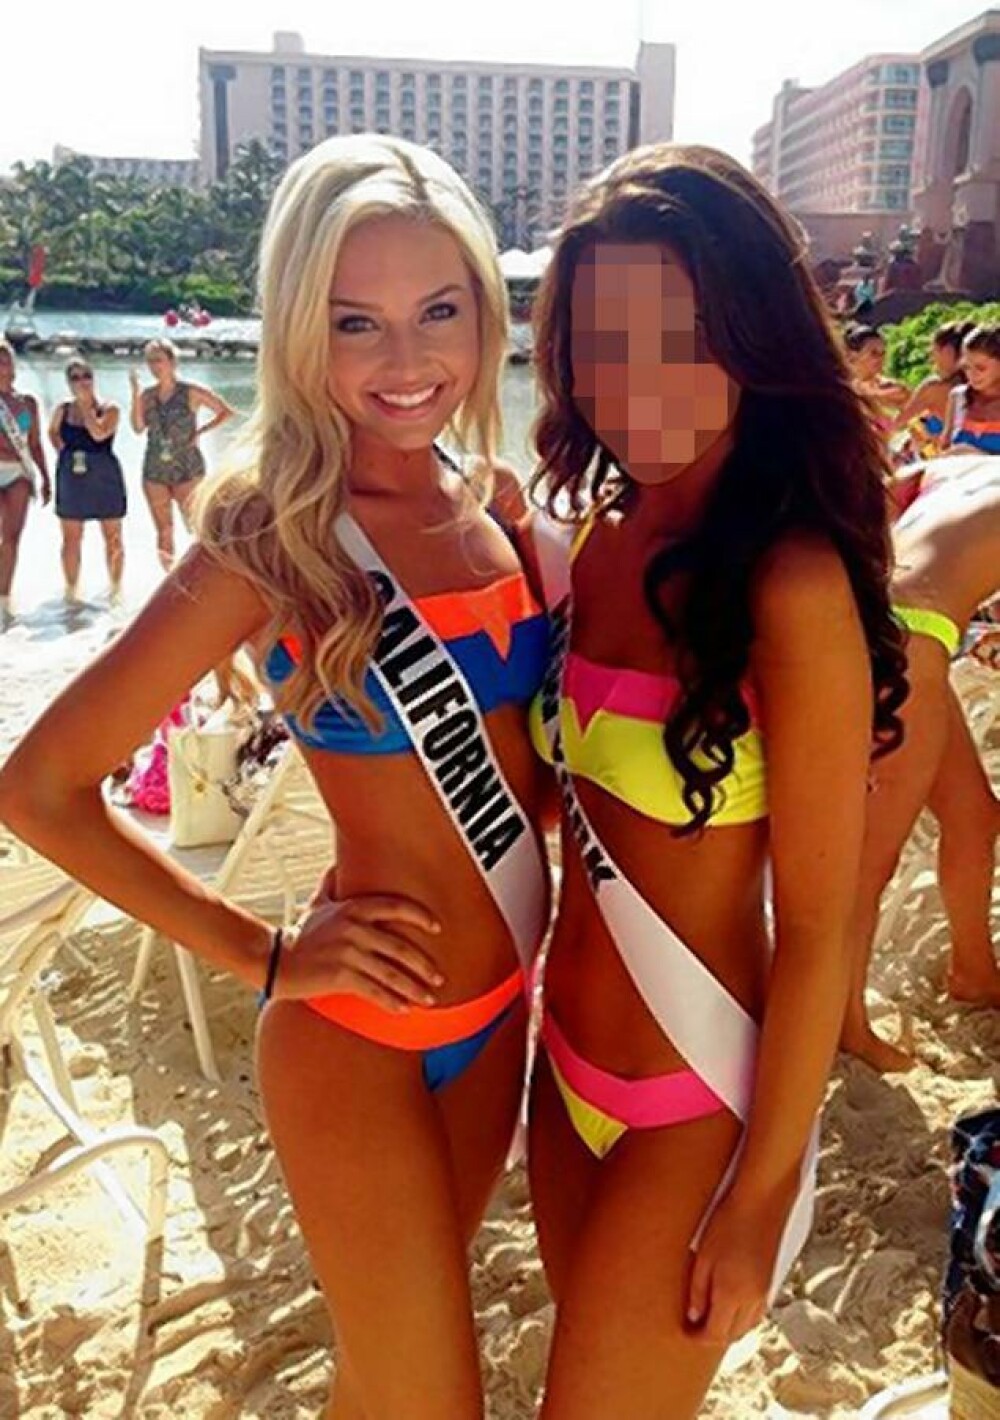 Imaginile din dormitorul noii Miss Teen USA obtinute de un hacker dupa ce i-a spart camera web - Imaginea 3